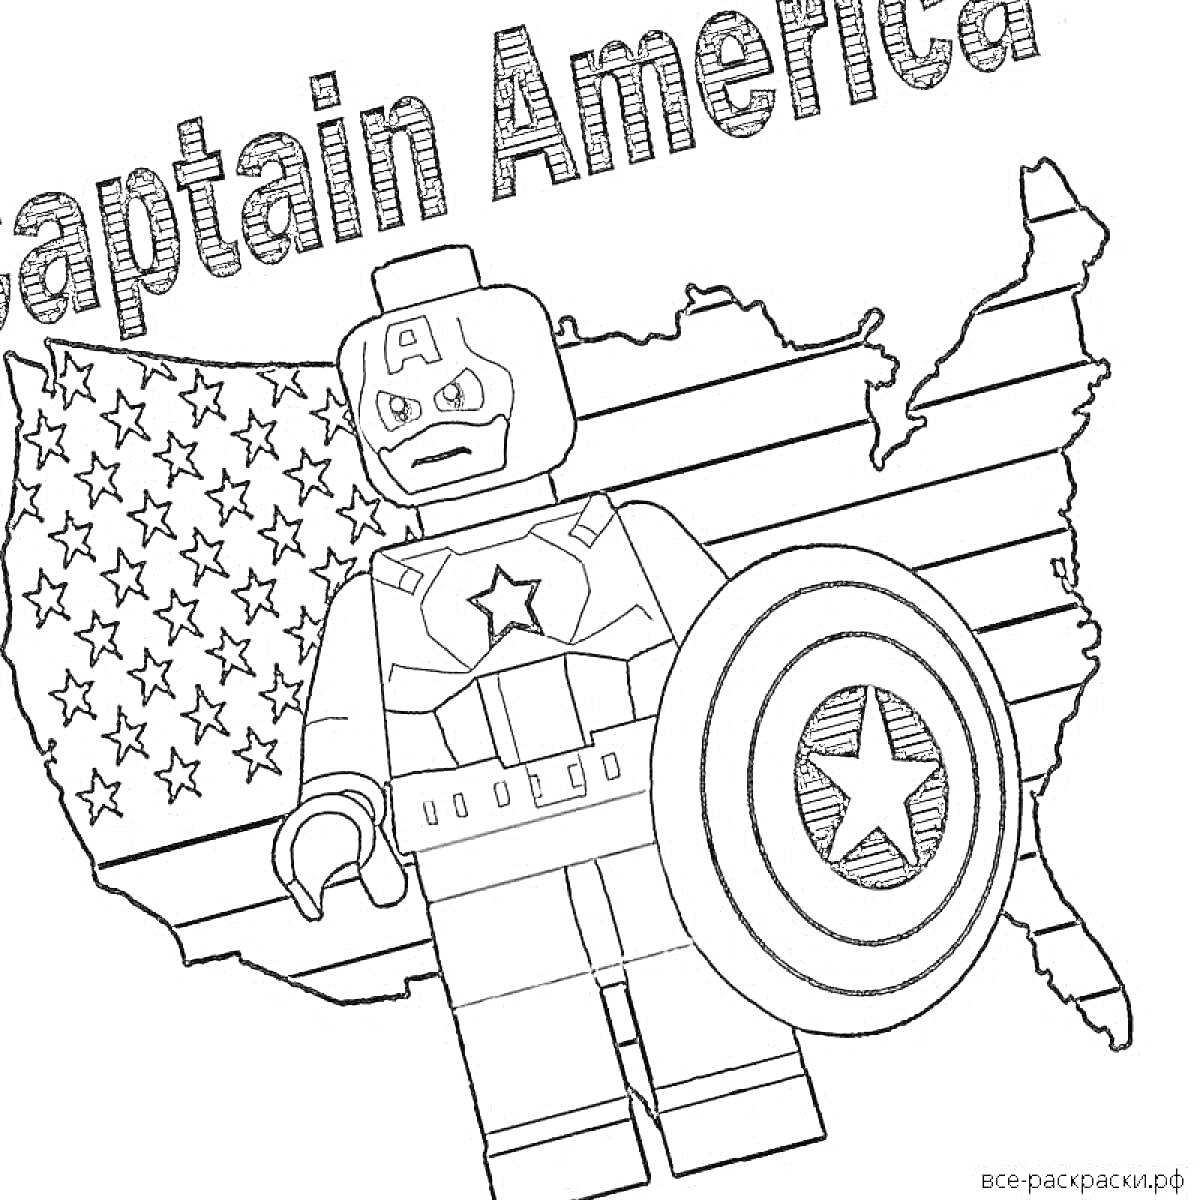 Раскраска Лего Капитан Америка на фоне контурной карты США с флагом и надписью Captain America